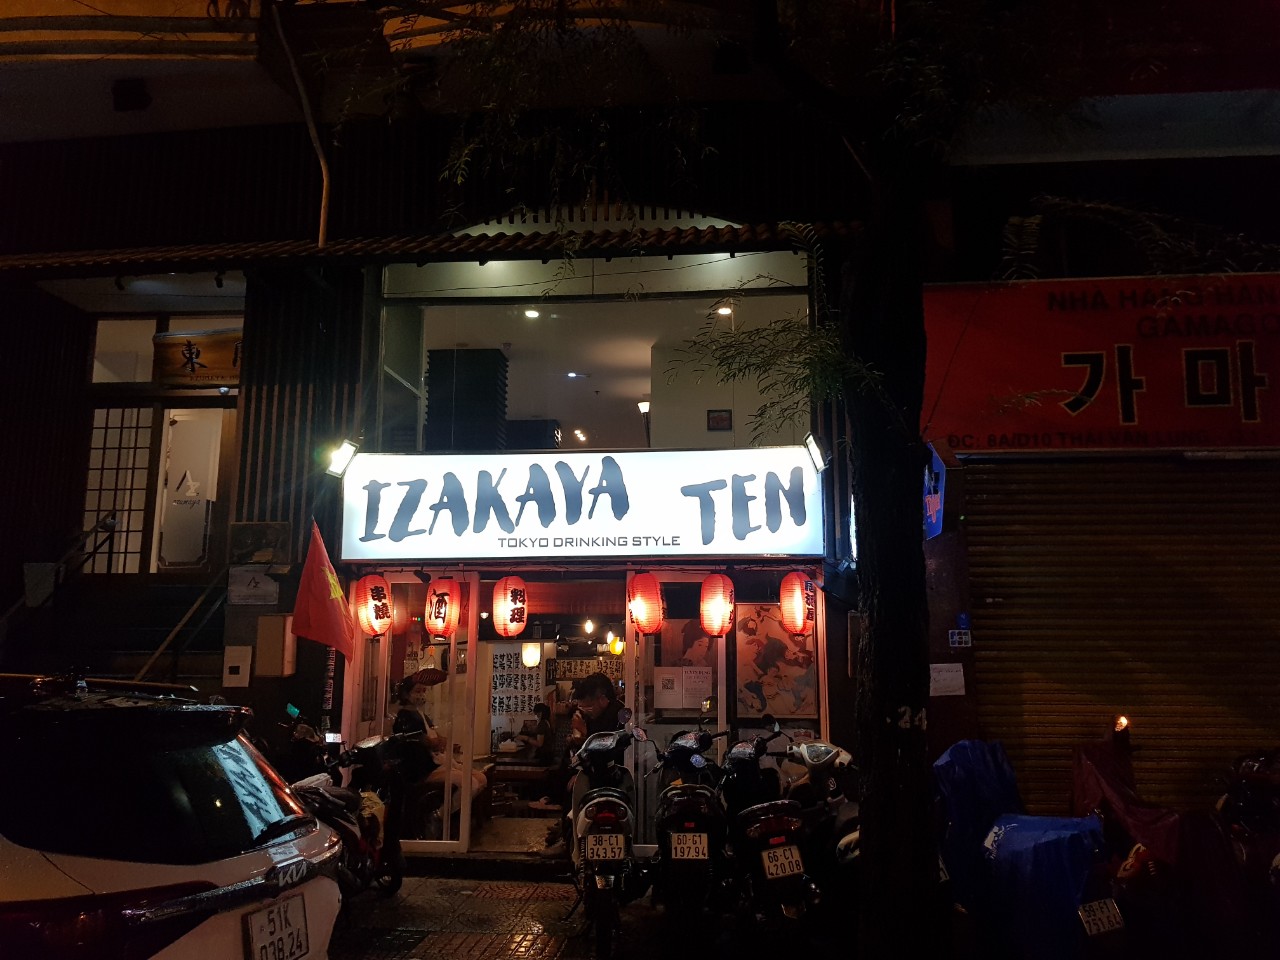 레탄톤 Izakaya Ten - 일본식 술집